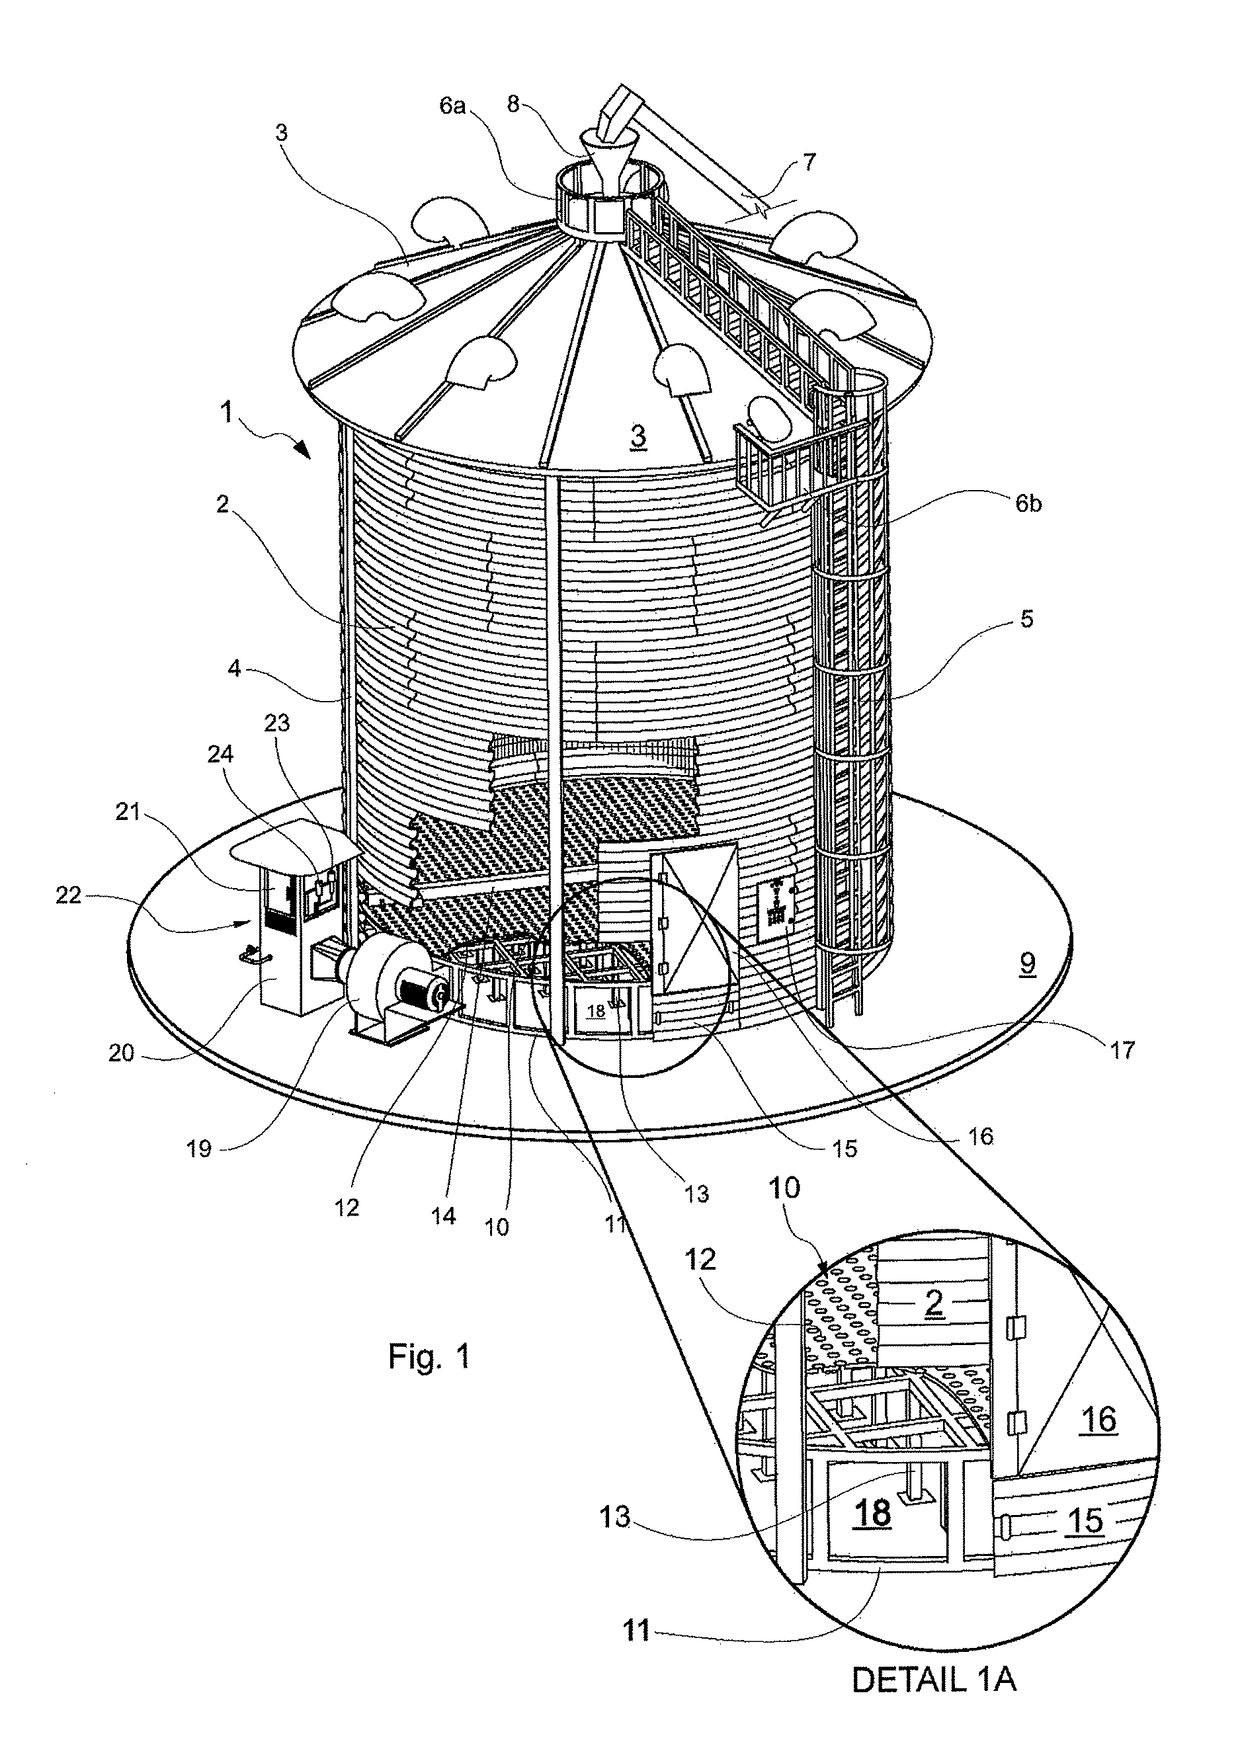 Procedure and facility for grain moisture control